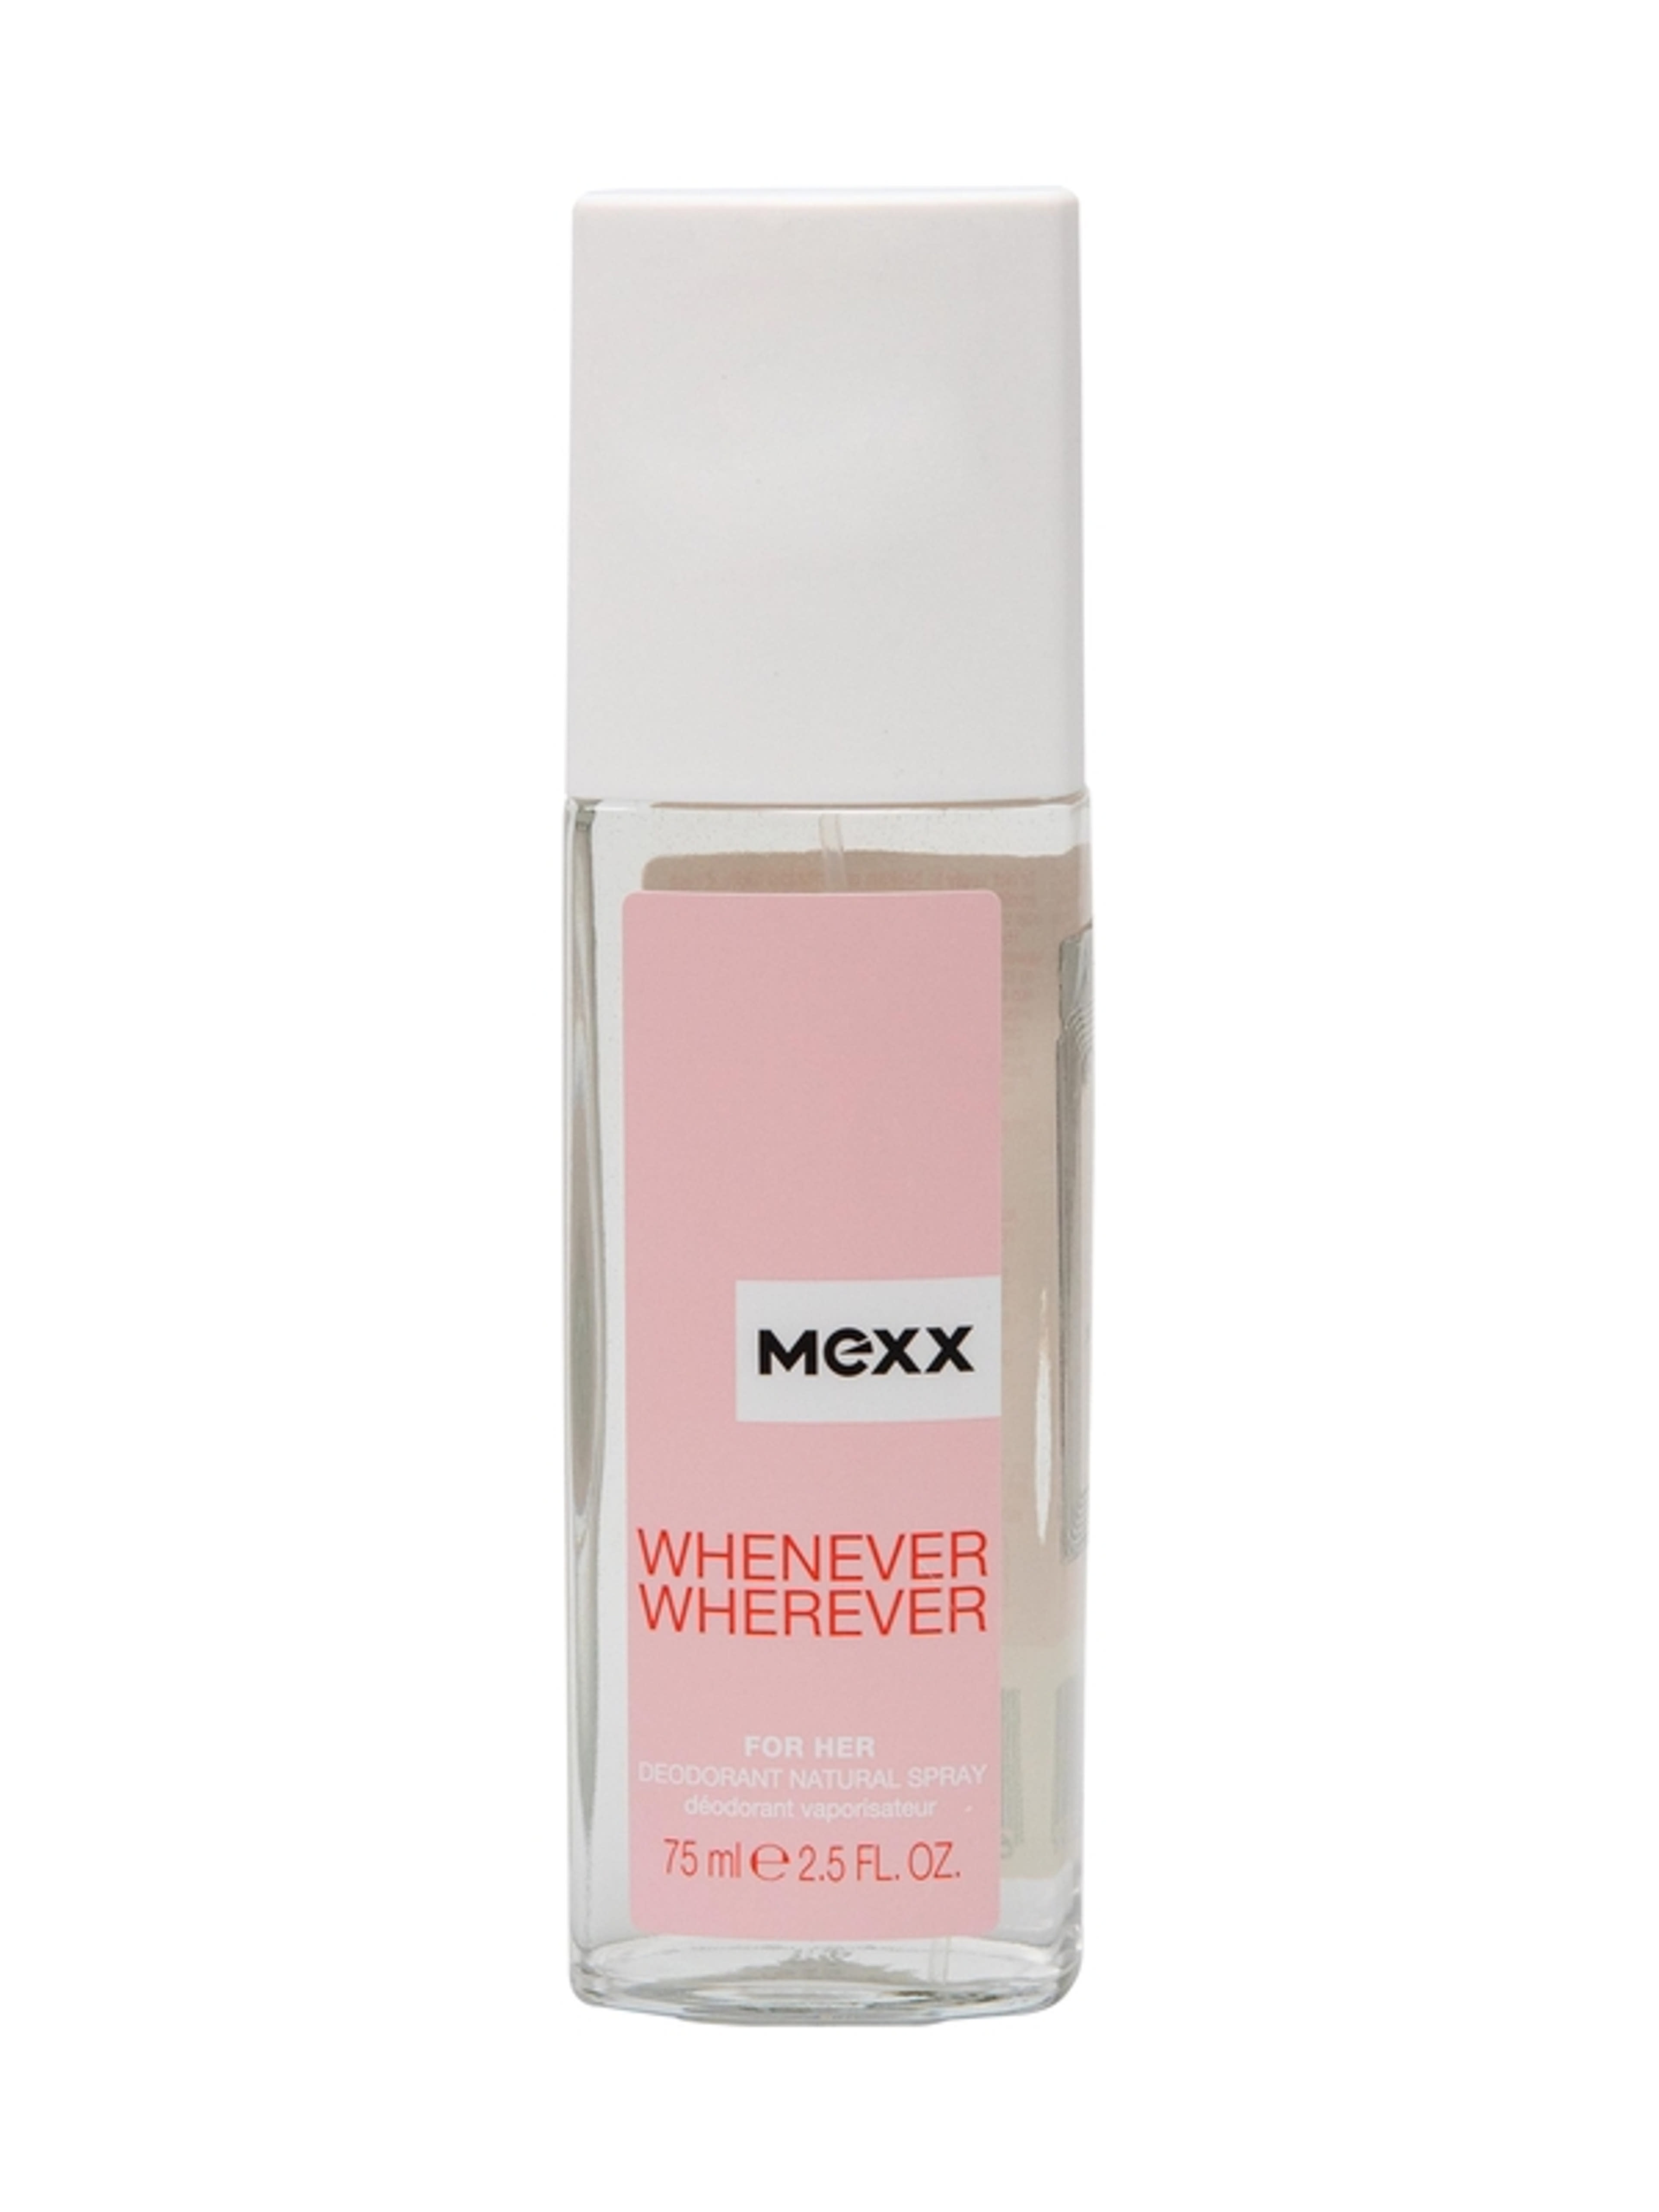 Mexx Whenever Wherever női dns - 75 ml